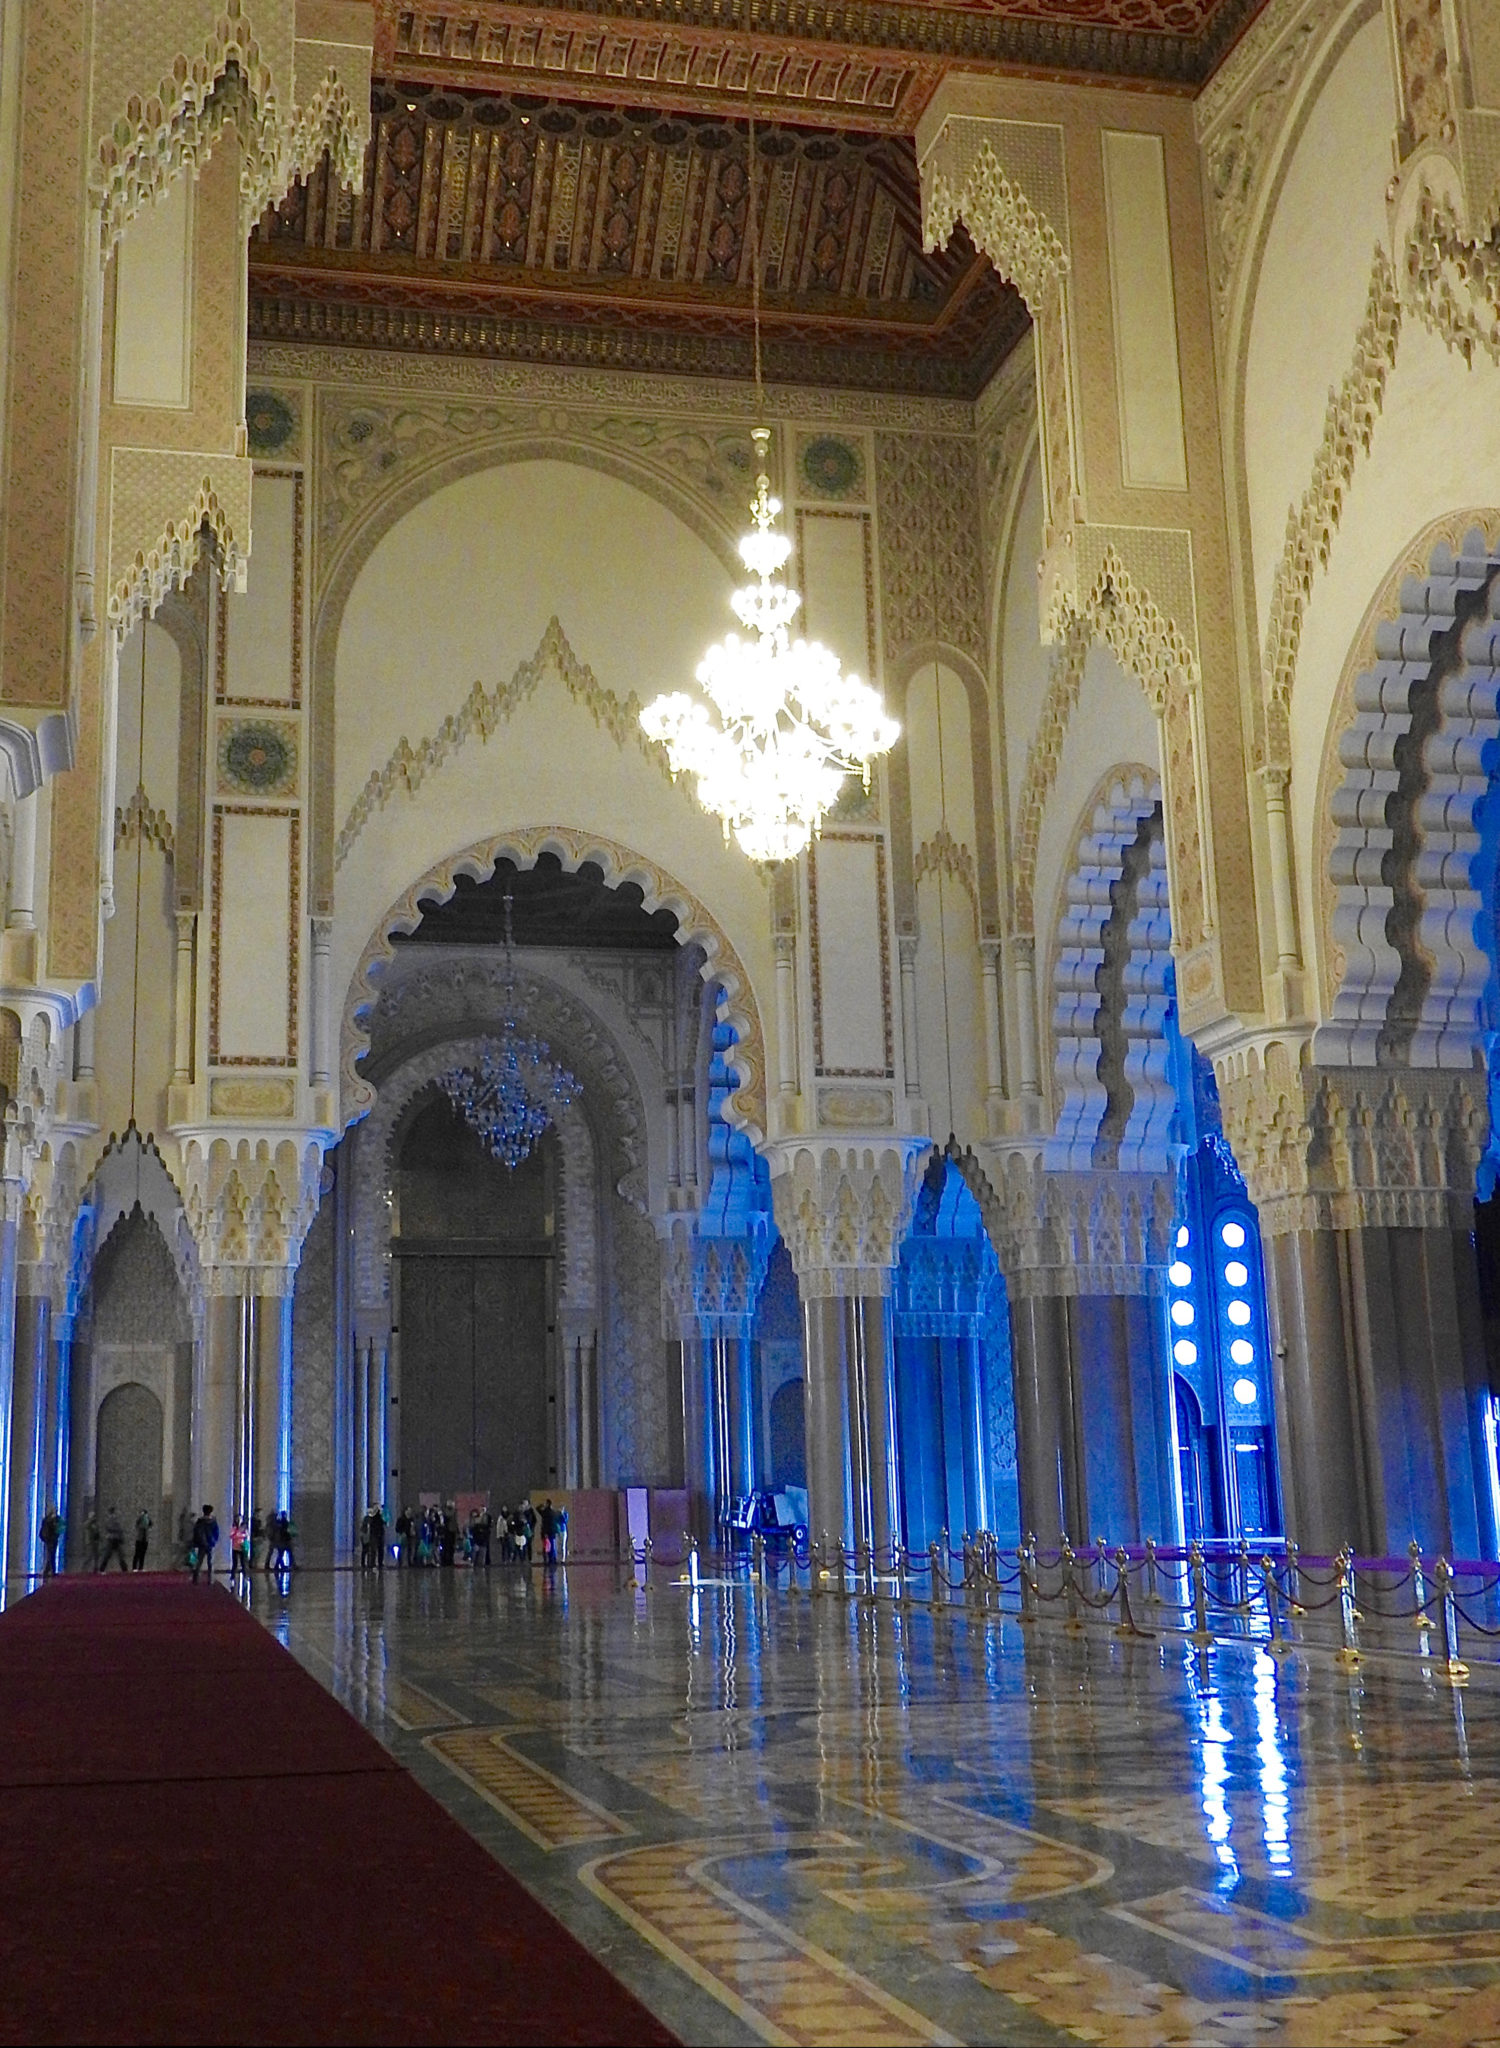 Mosque interior chandelier arches